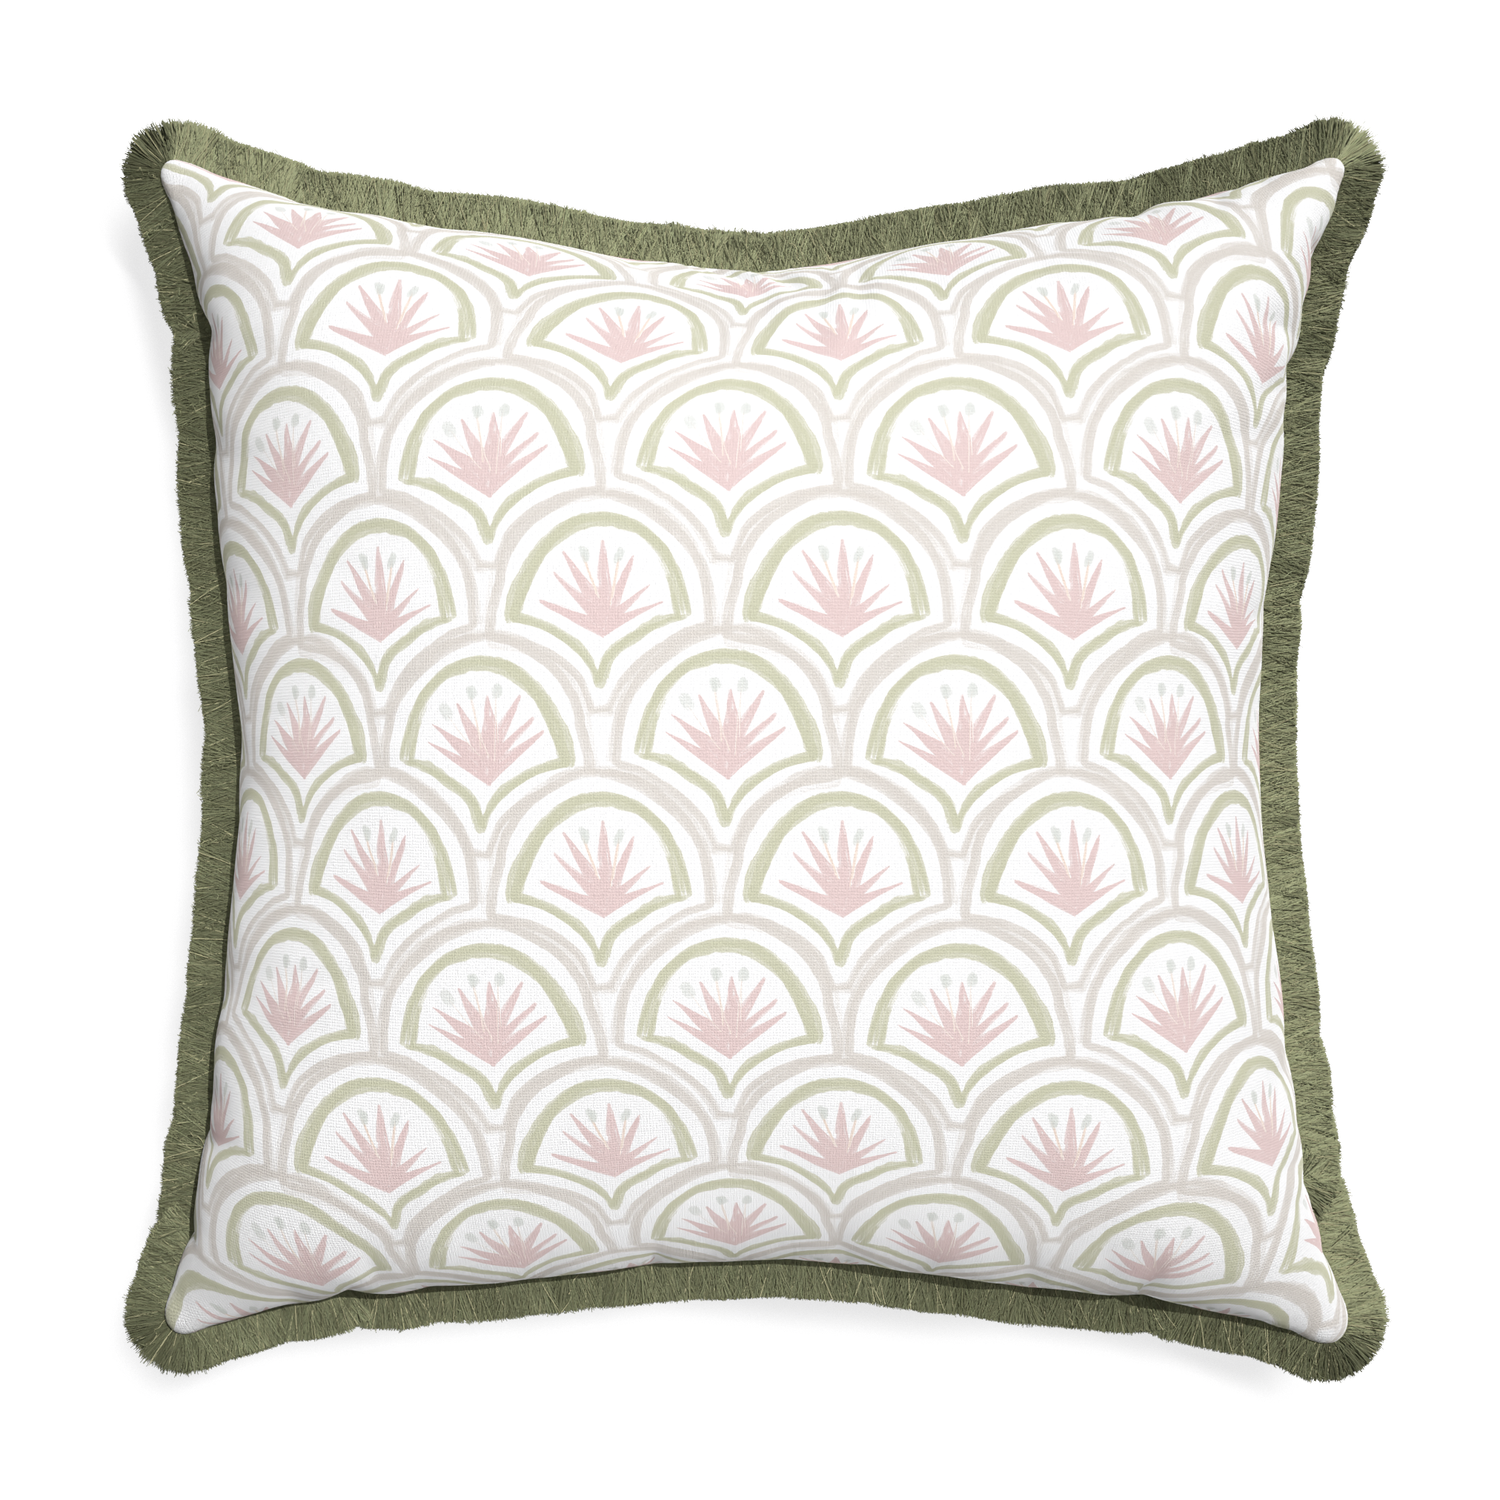 Euro-sham thatcher rose custom pillow with sage fringe on white background